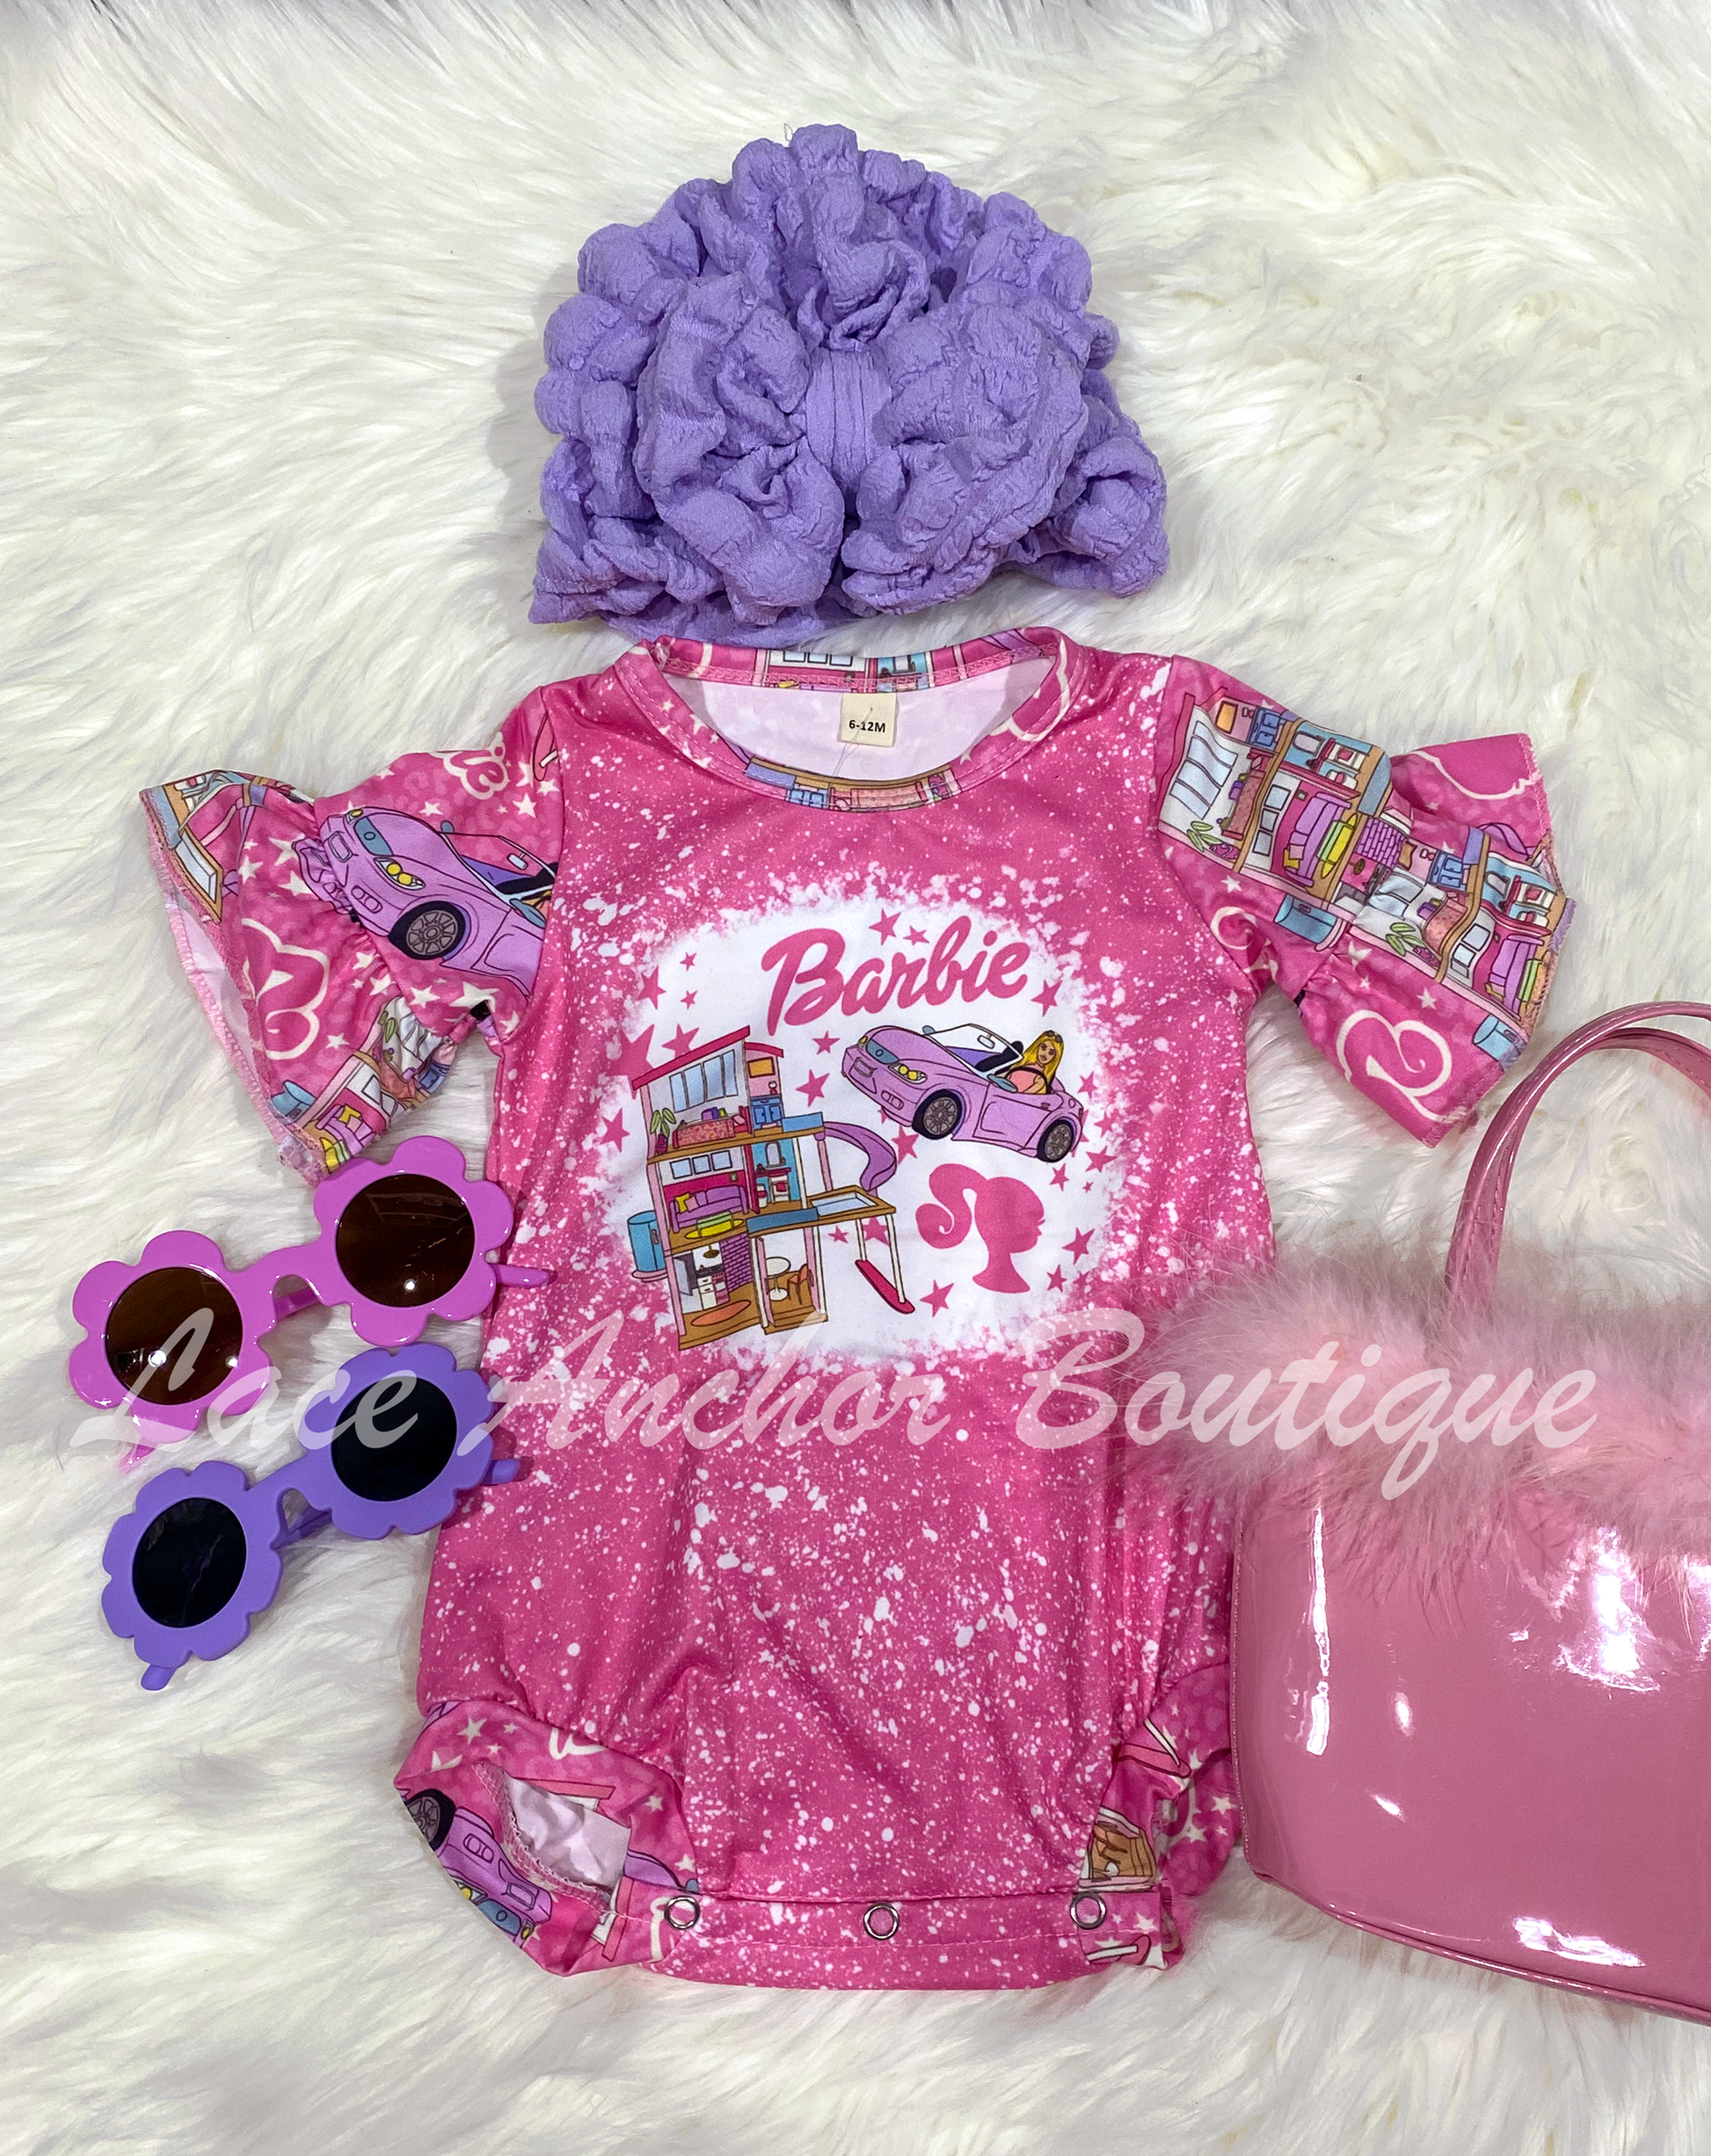 Retro Barbie Girl Pink Baby Romper - Vintage Infant Girly Hot Pink Snap Onesie